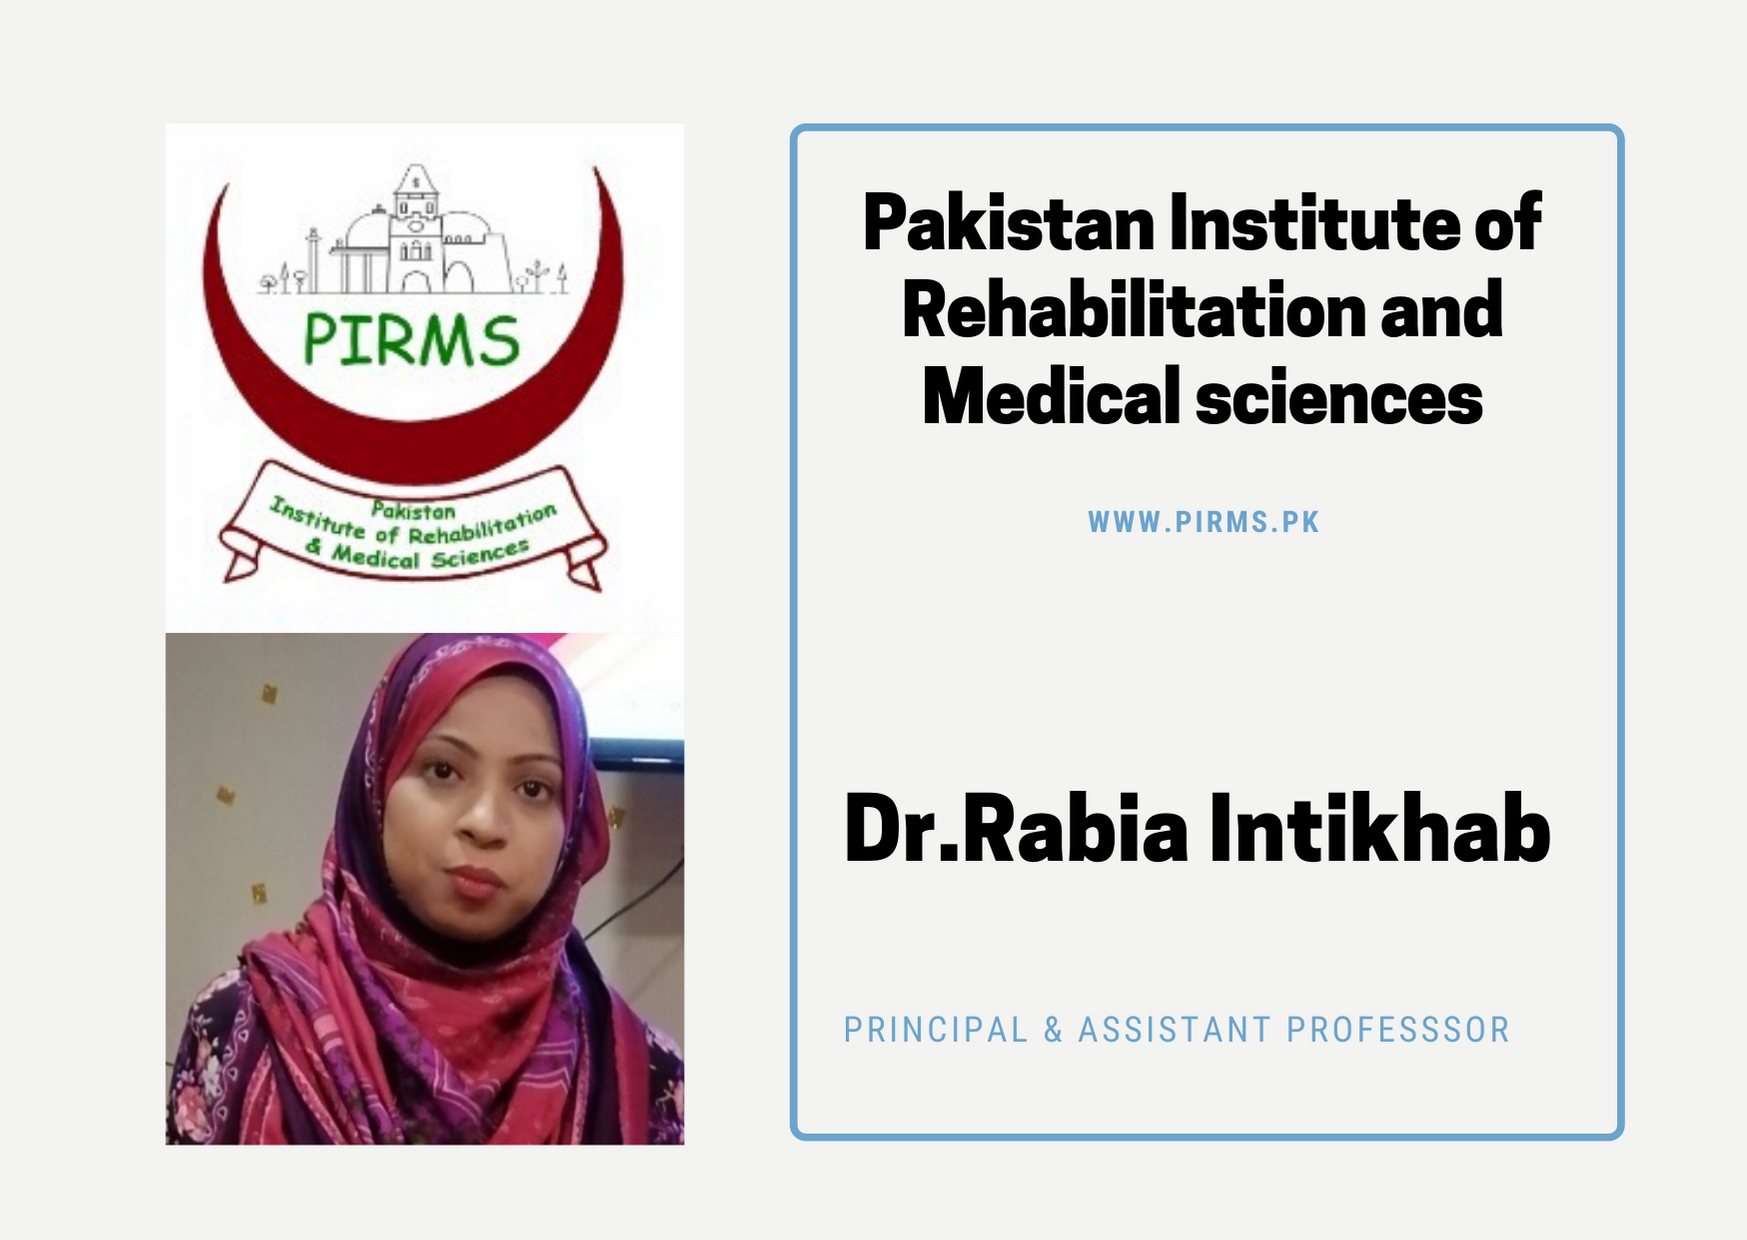 PIRMS by Dr.Rabia Intikhab